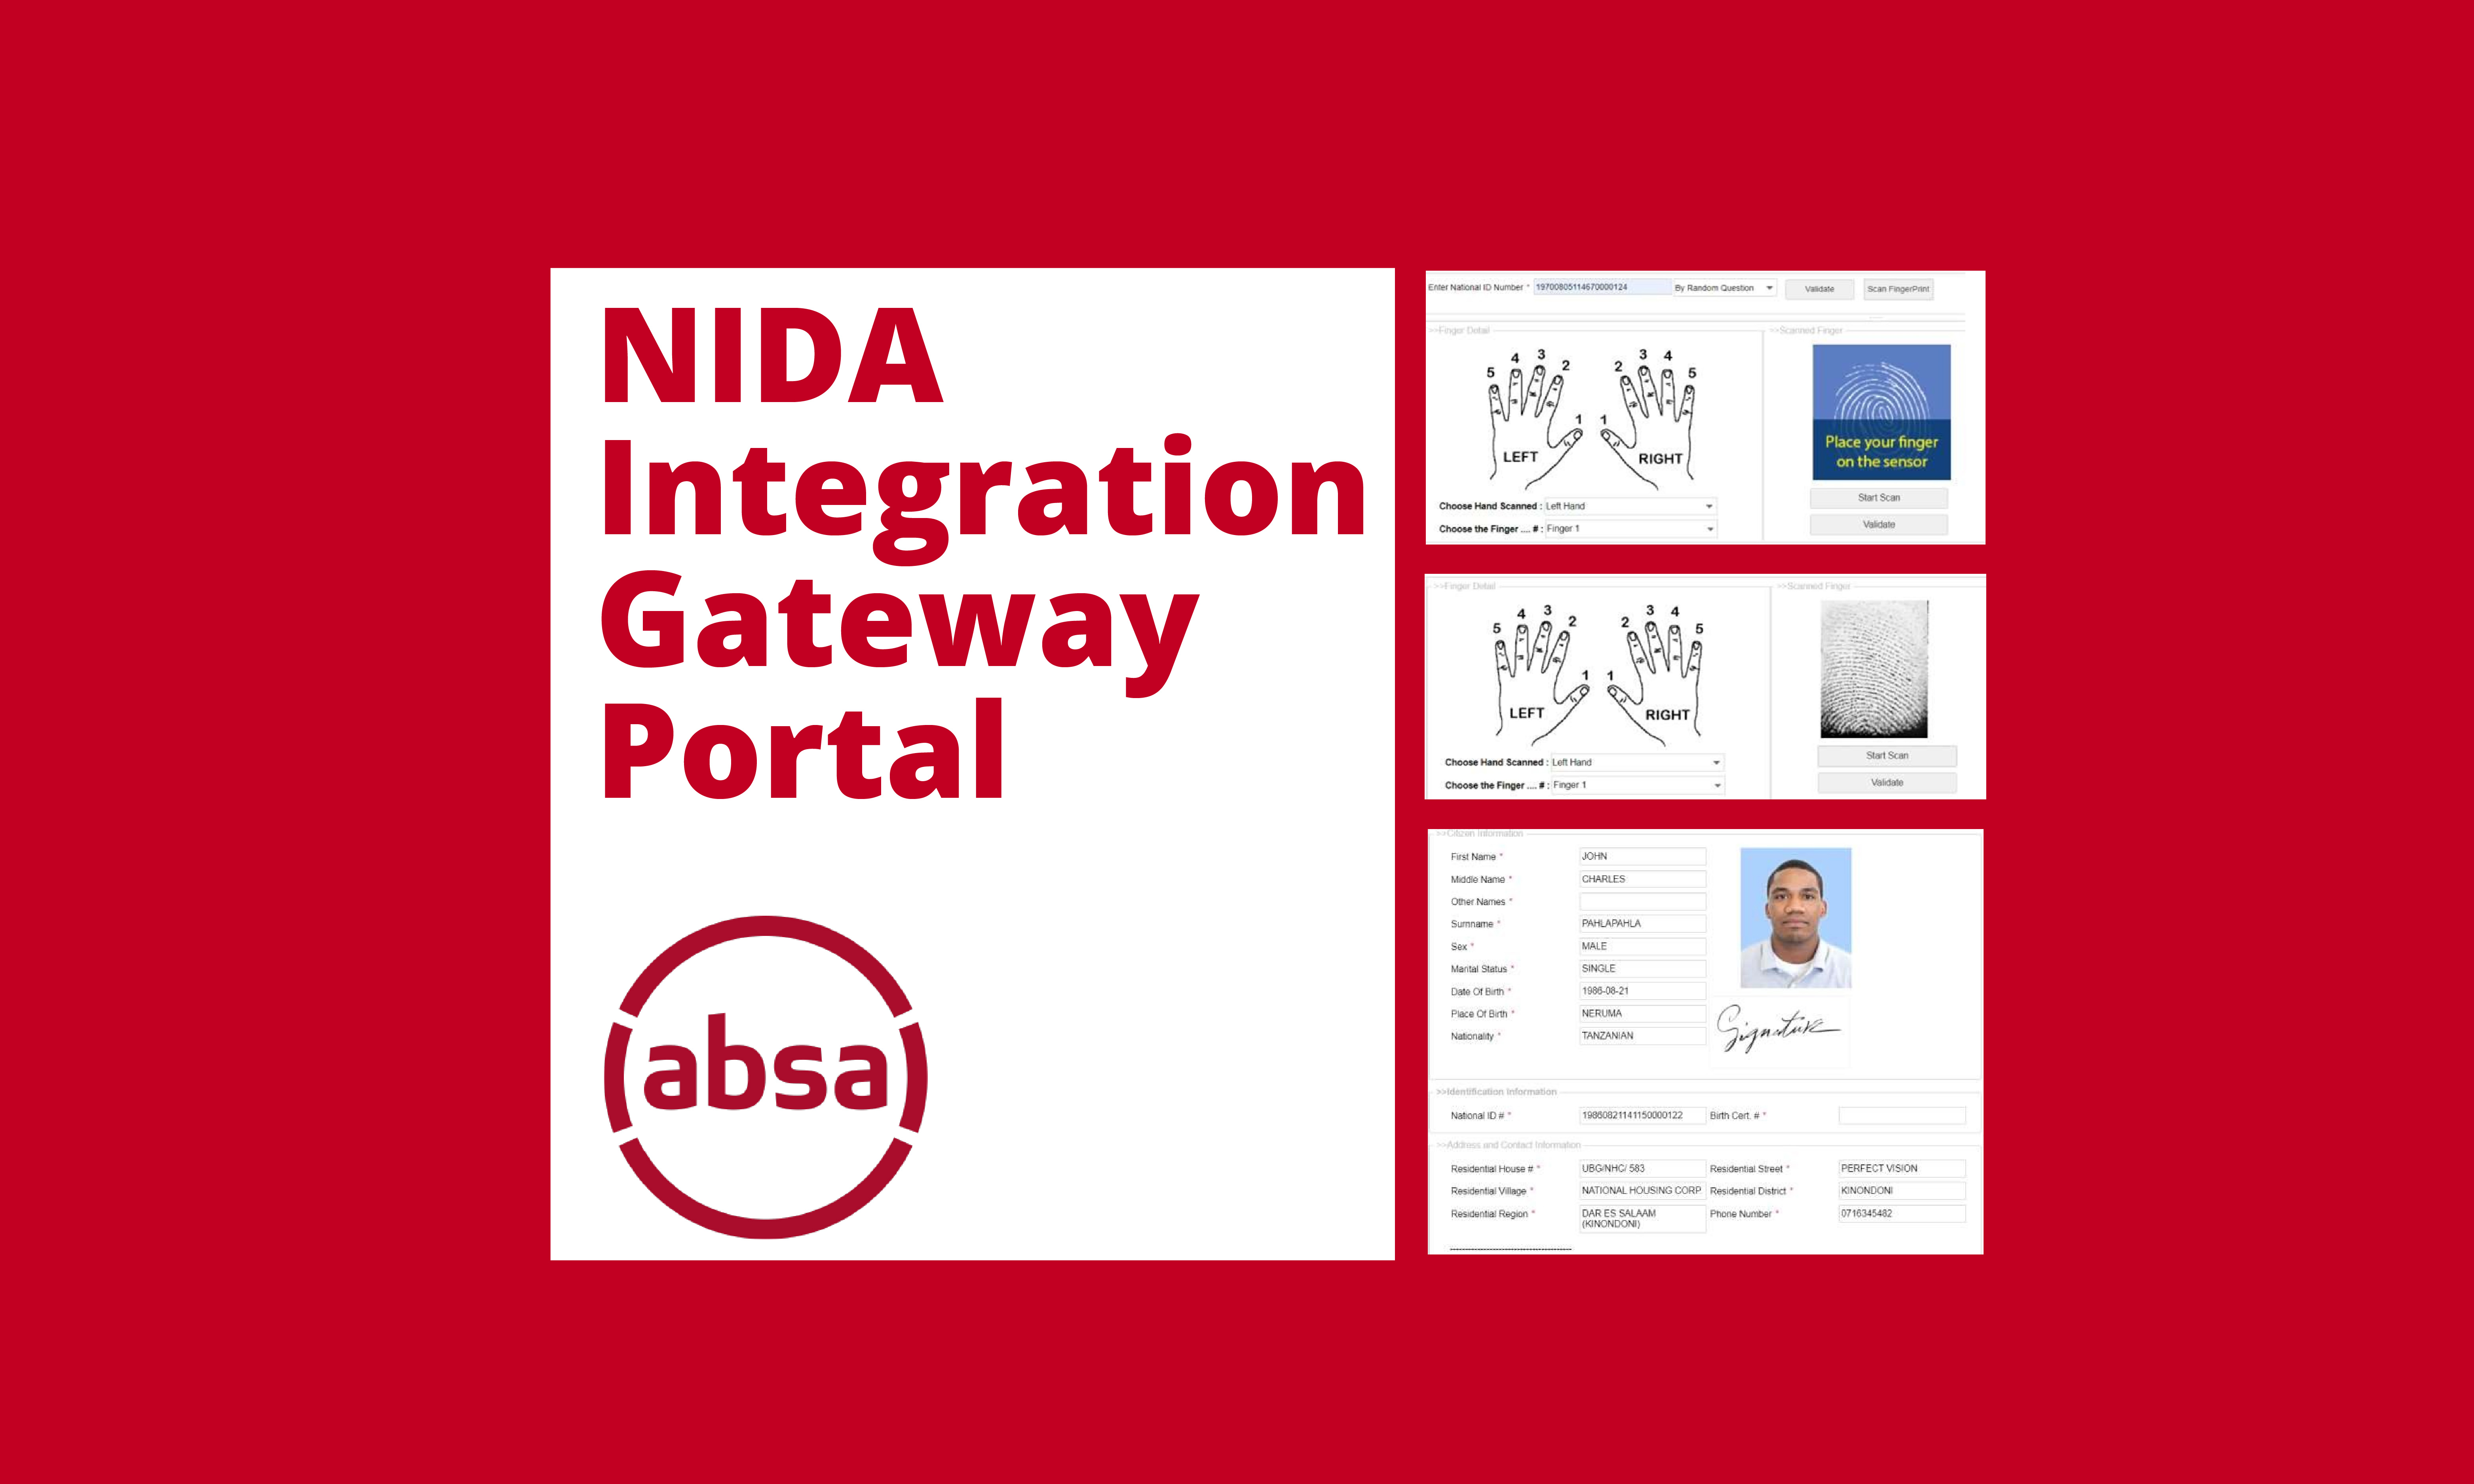 ABSA NIDA Integration